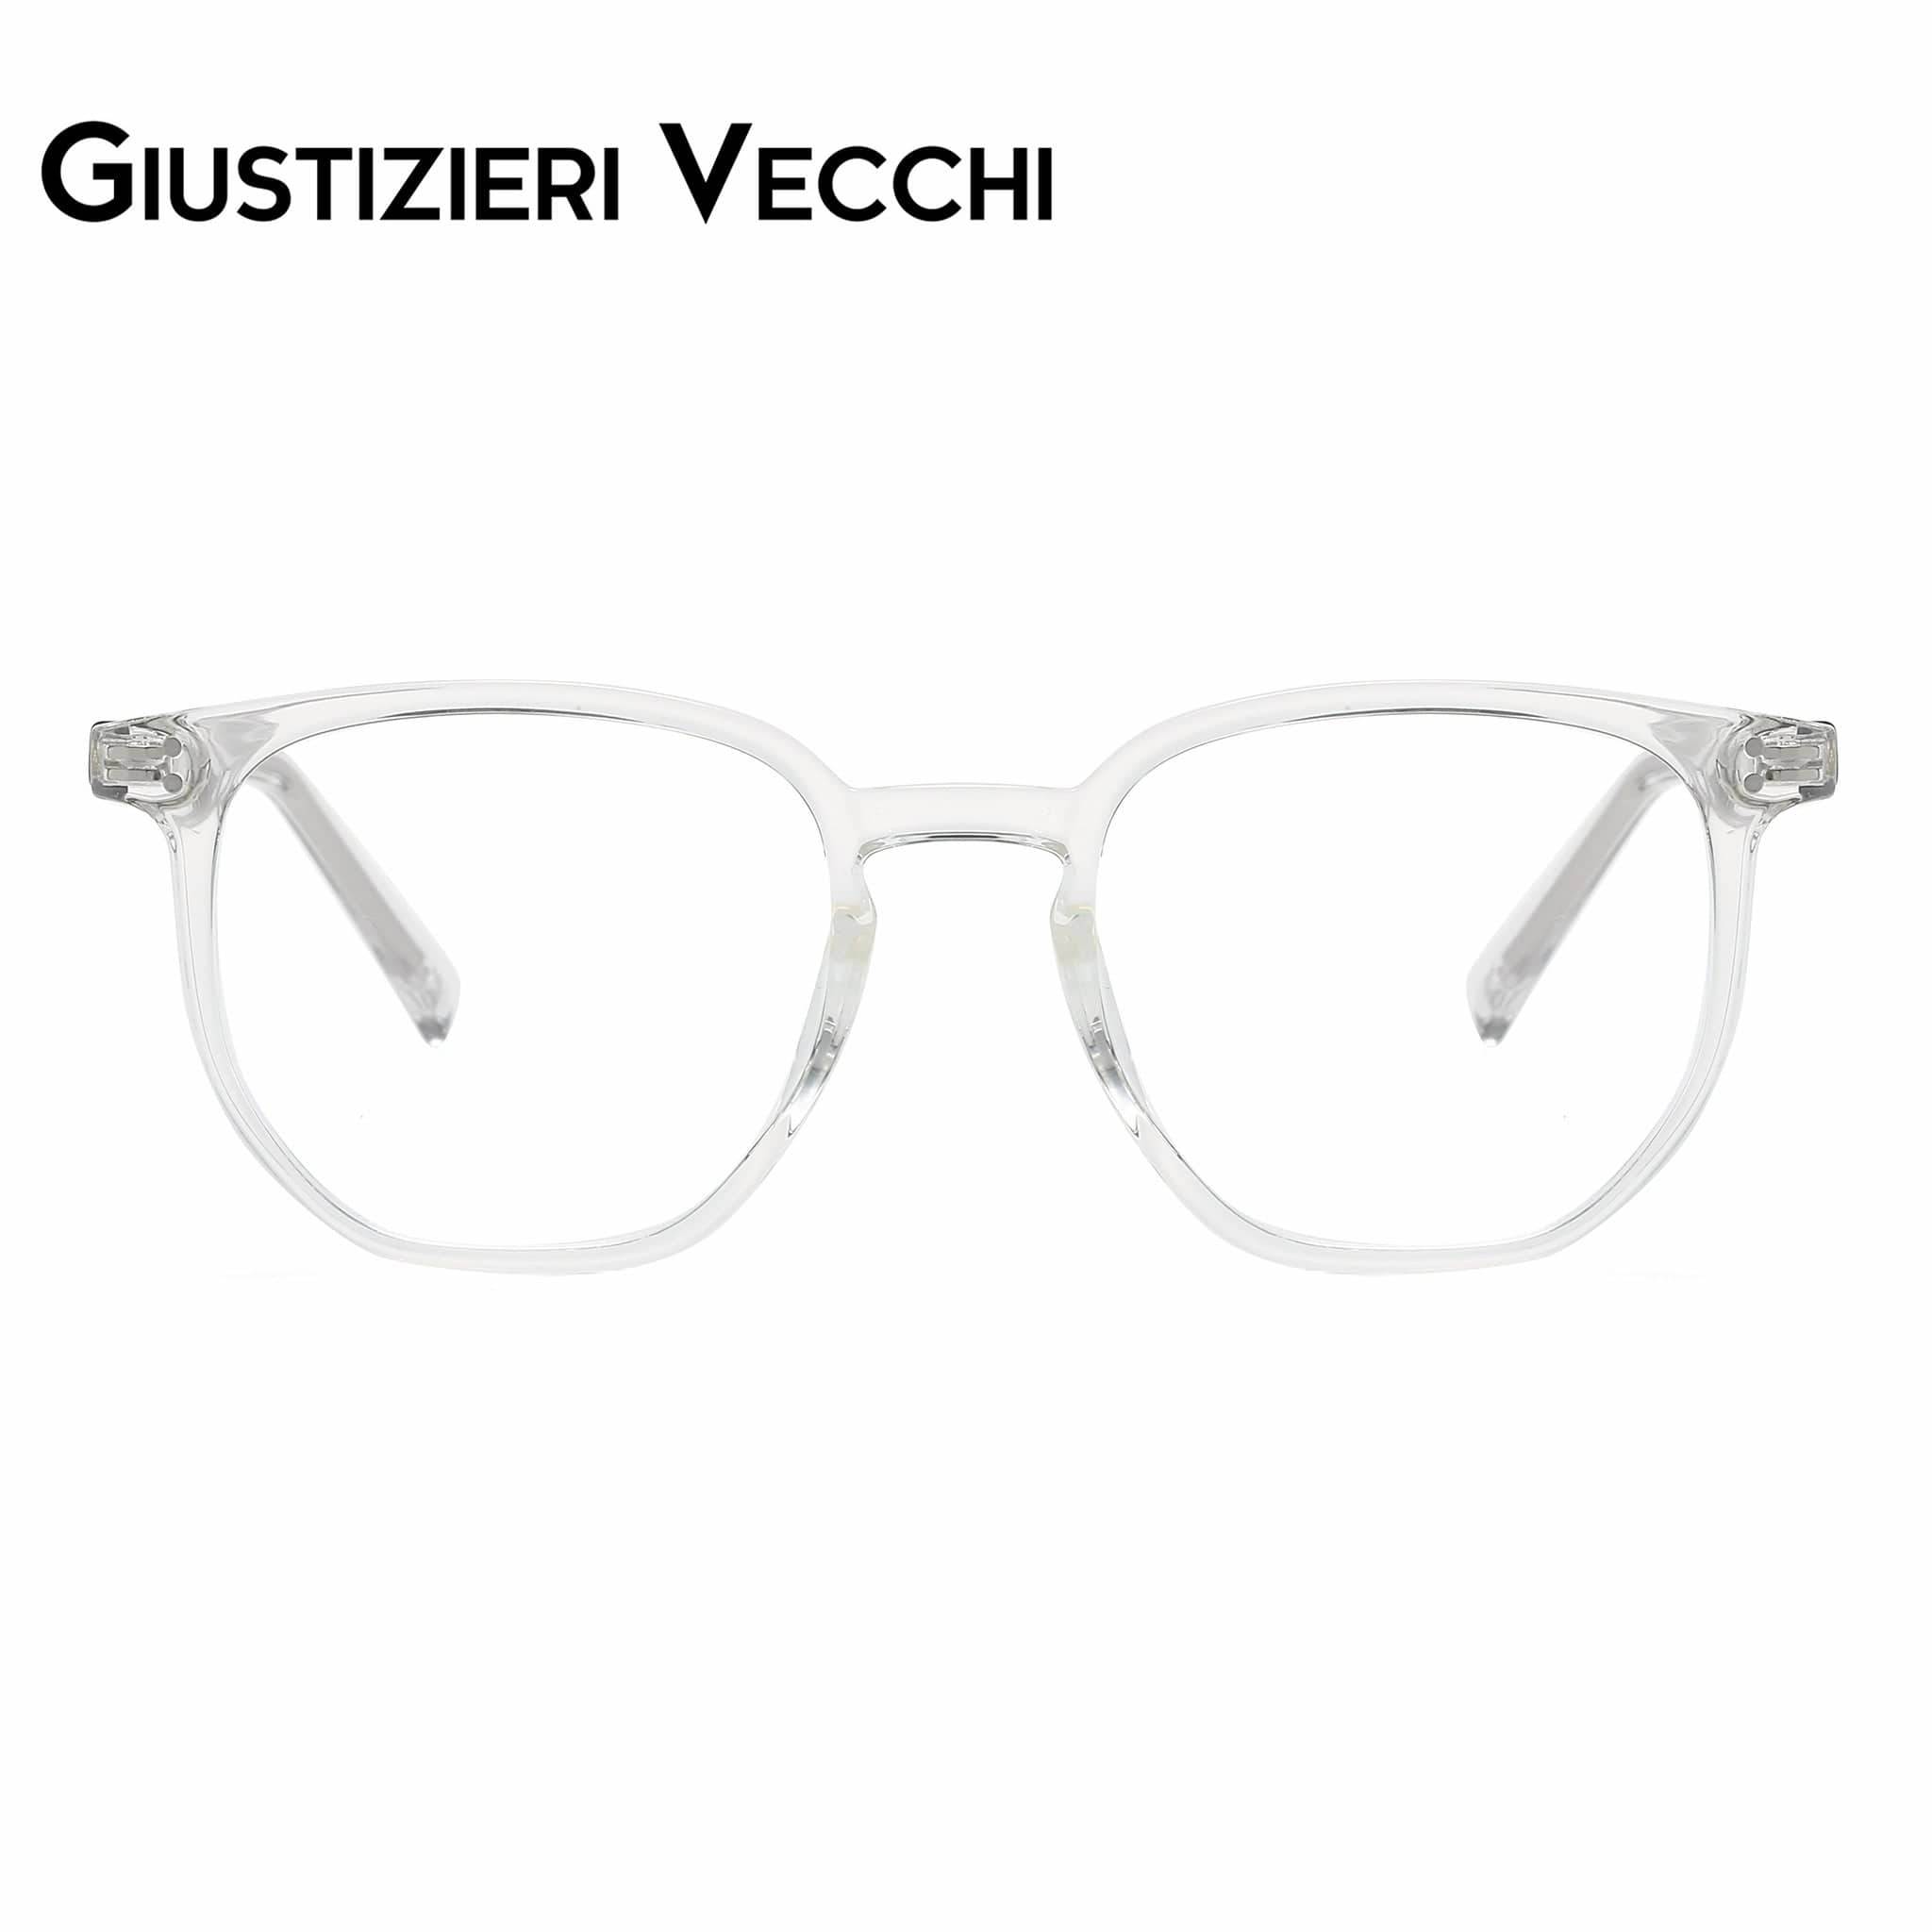 GIUSTIZIERI VECCHI Eyeglasses Small / Clear Crystal Venezia Vista Duo